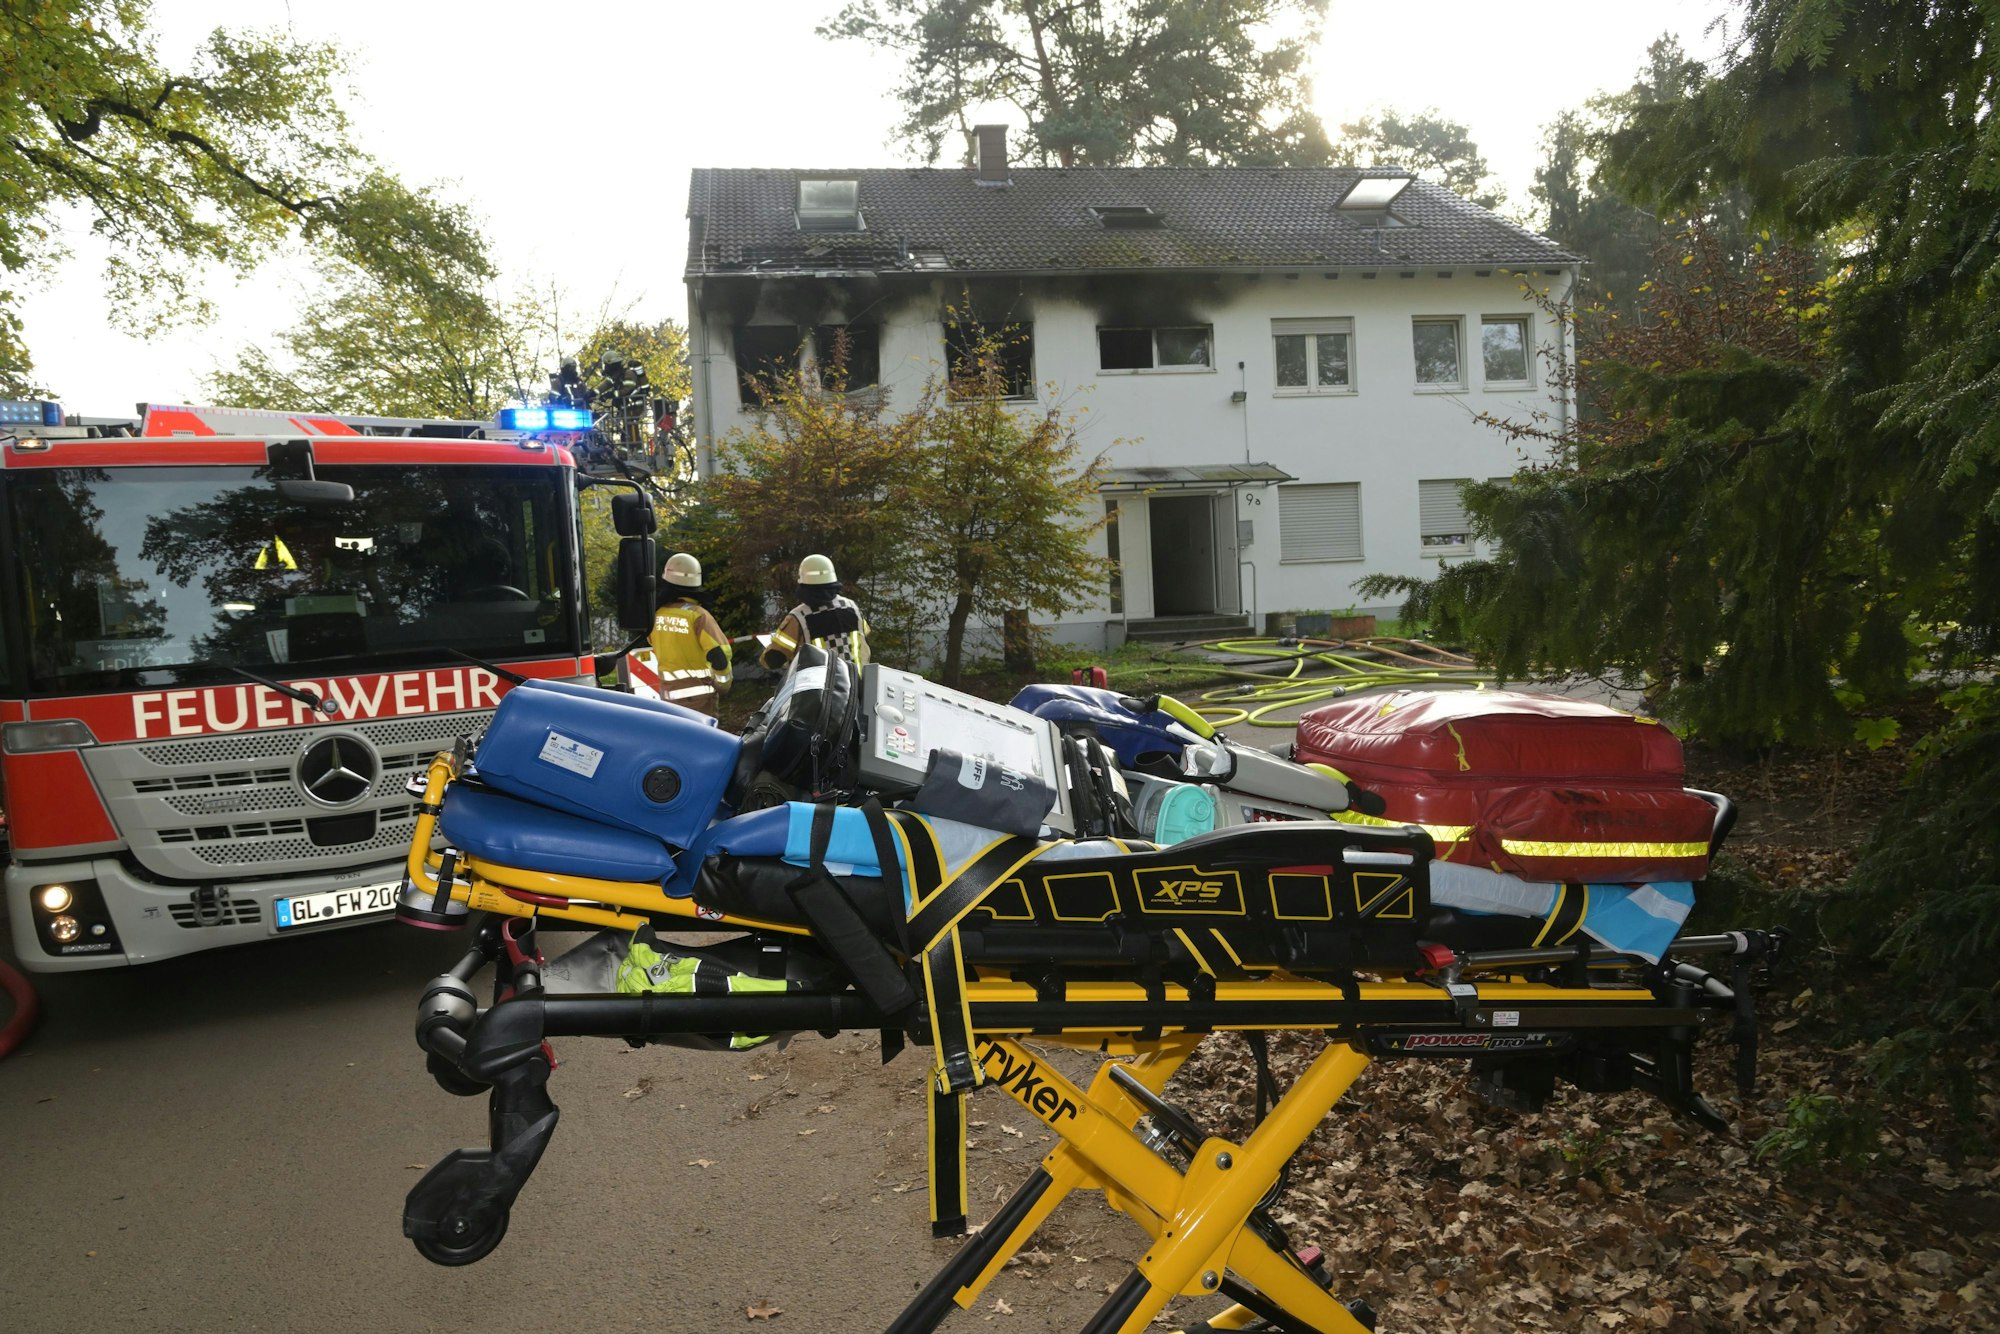 Rauch strmöt aus Fenster der Notunterkunft in Bergisch Gladbach, davor steht ein Feuerwehr und eine Bare mit Gegenständen darauf.